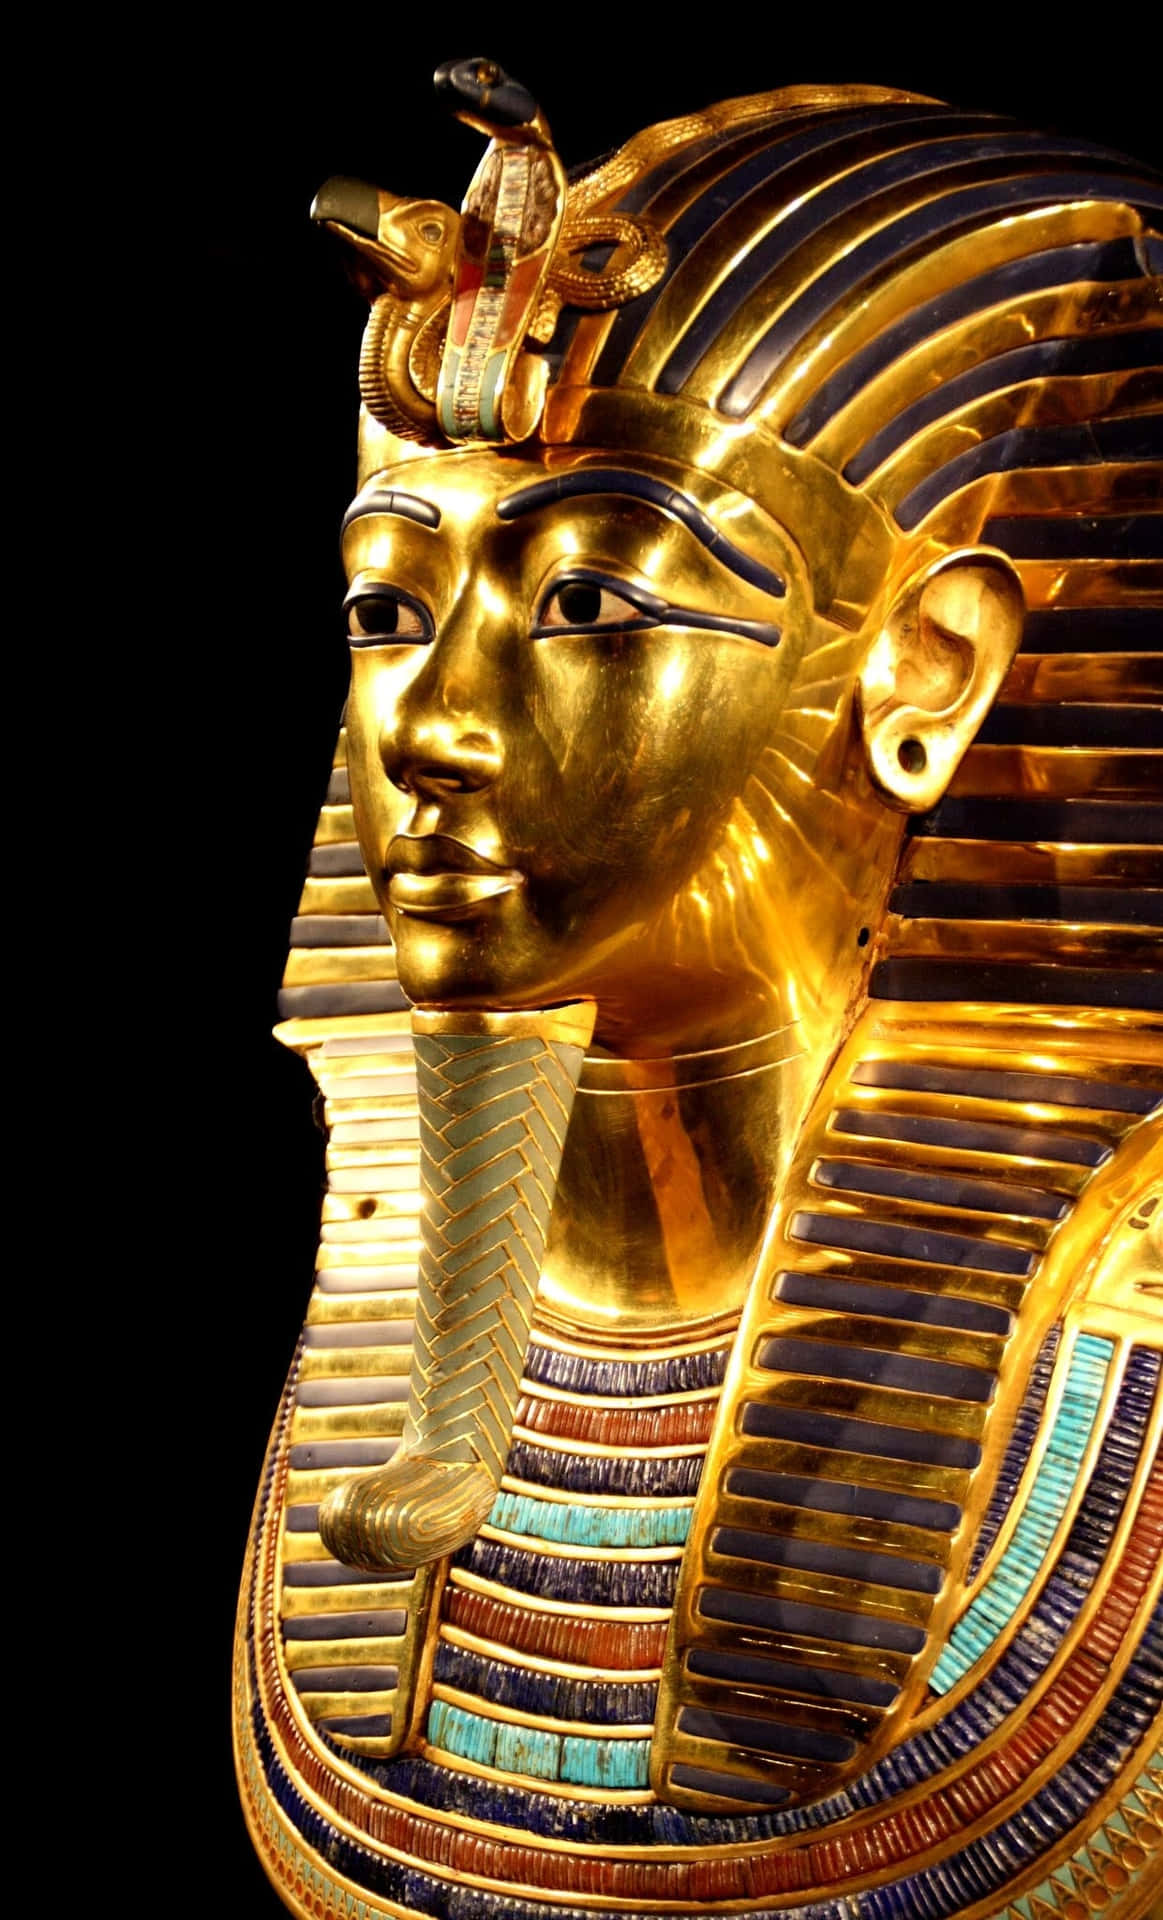 Einegoldene Ägyptische Maske Wird Auf Einem Schwarzen Hintergrund Gezeigt.